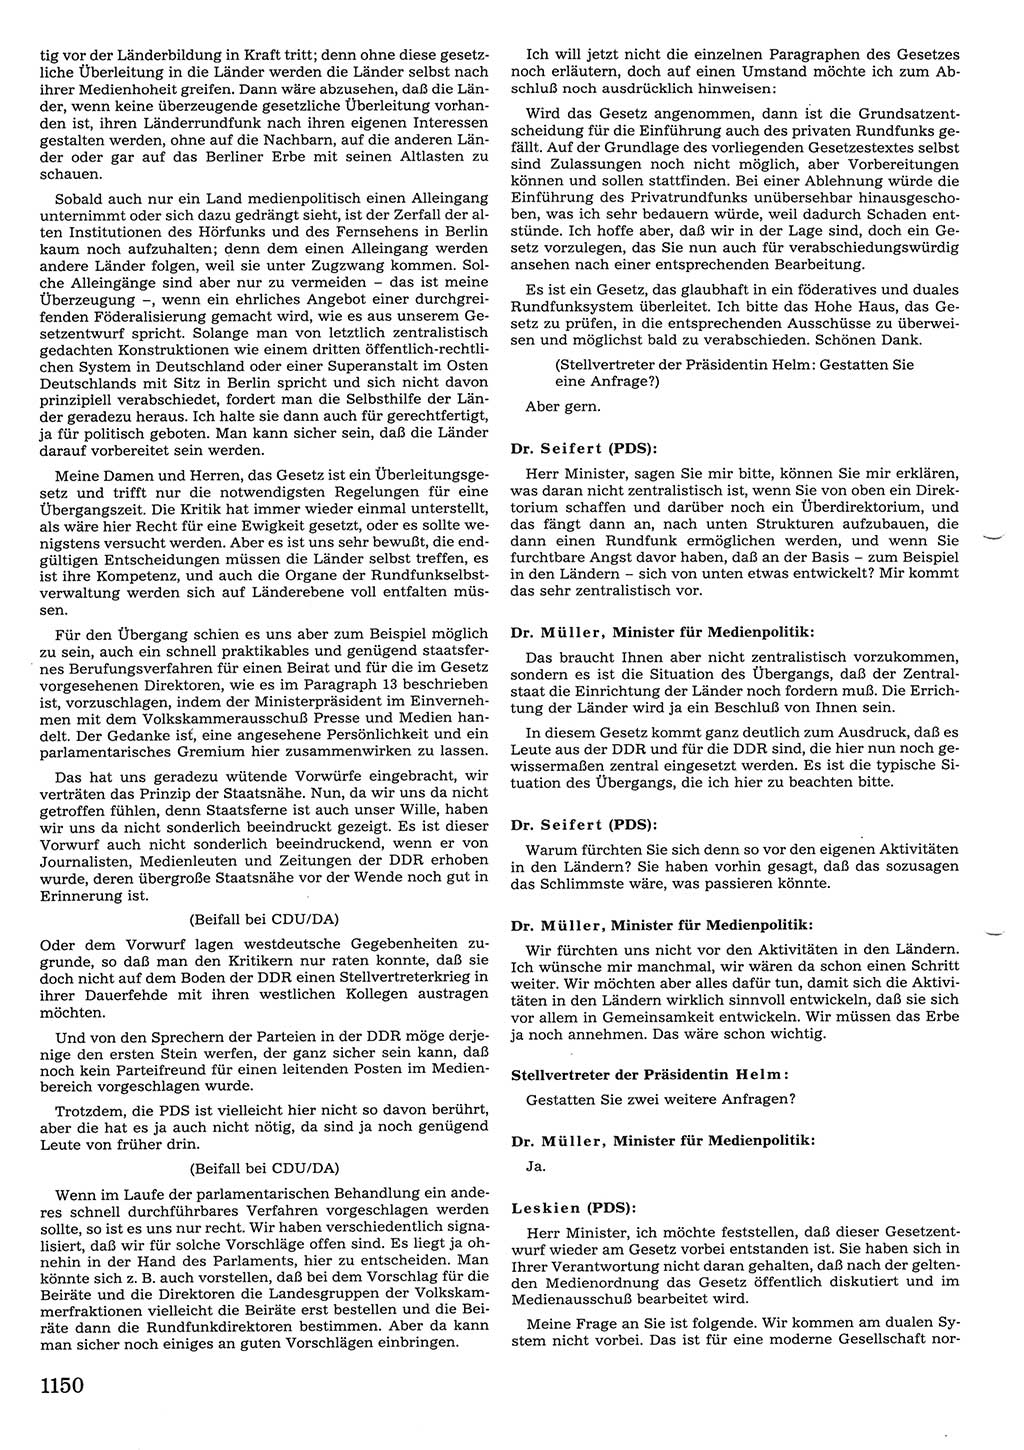 Tagungen der Volkskammer (VK) der Deutschen Demokratischen Republik (DDR), 10. Wahlperiode 1990, Seite 1150 (VK. DDR 10. WP. 1990, Prot. Tg. 1-38, 5.4.-2.10.1990, S. 1150)